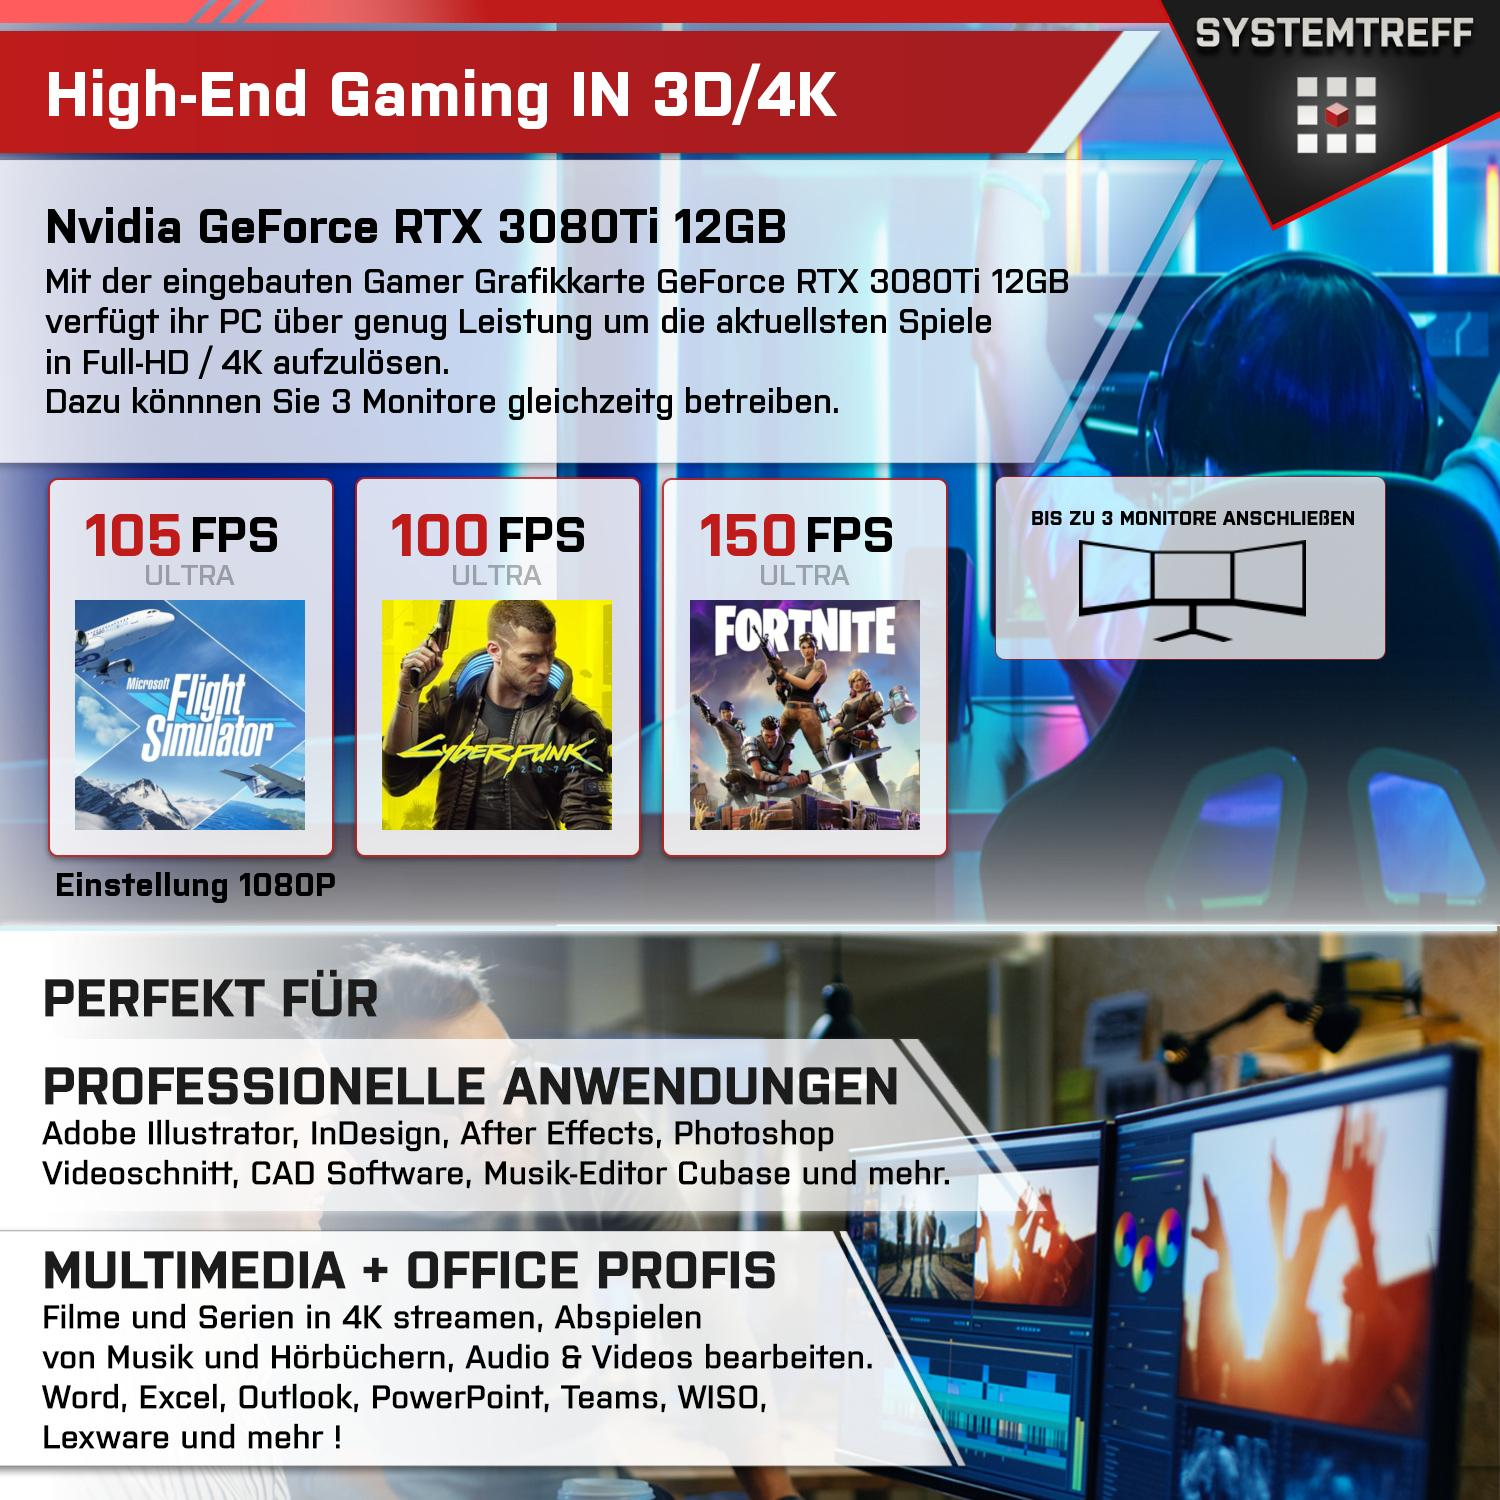 SYSTEMTREFF Gaming Komplett i9-11900K 3080 mit GDDR6X, Ti Core i9-11900K, mSSD, Nvidia PC Intel GB 32 12GB GeForce RAM, Komplett 1000 12 GB Prozessor, GB RTX